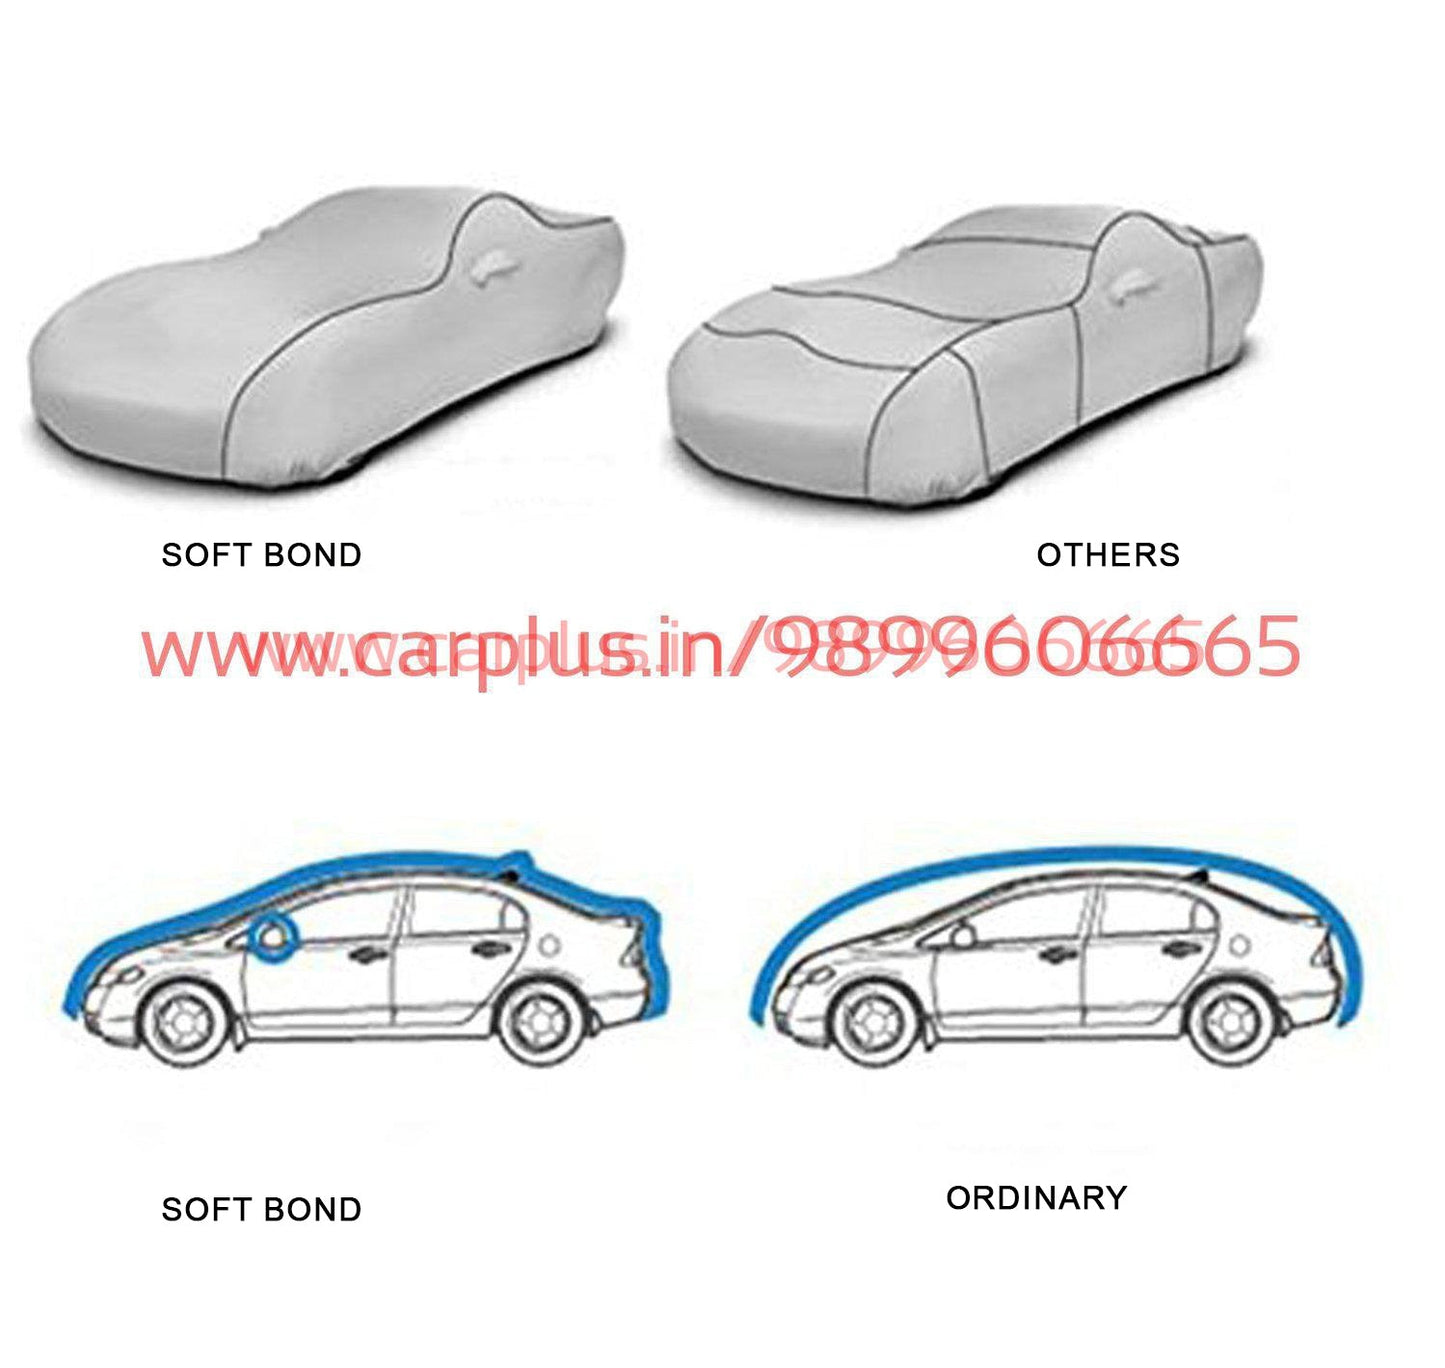 
                  
                    Soft Bond Body Cover for Mercedes-Benz GLS 400-Grey-BODY COVER-SOFT BOND-CARPLUS
                  
                